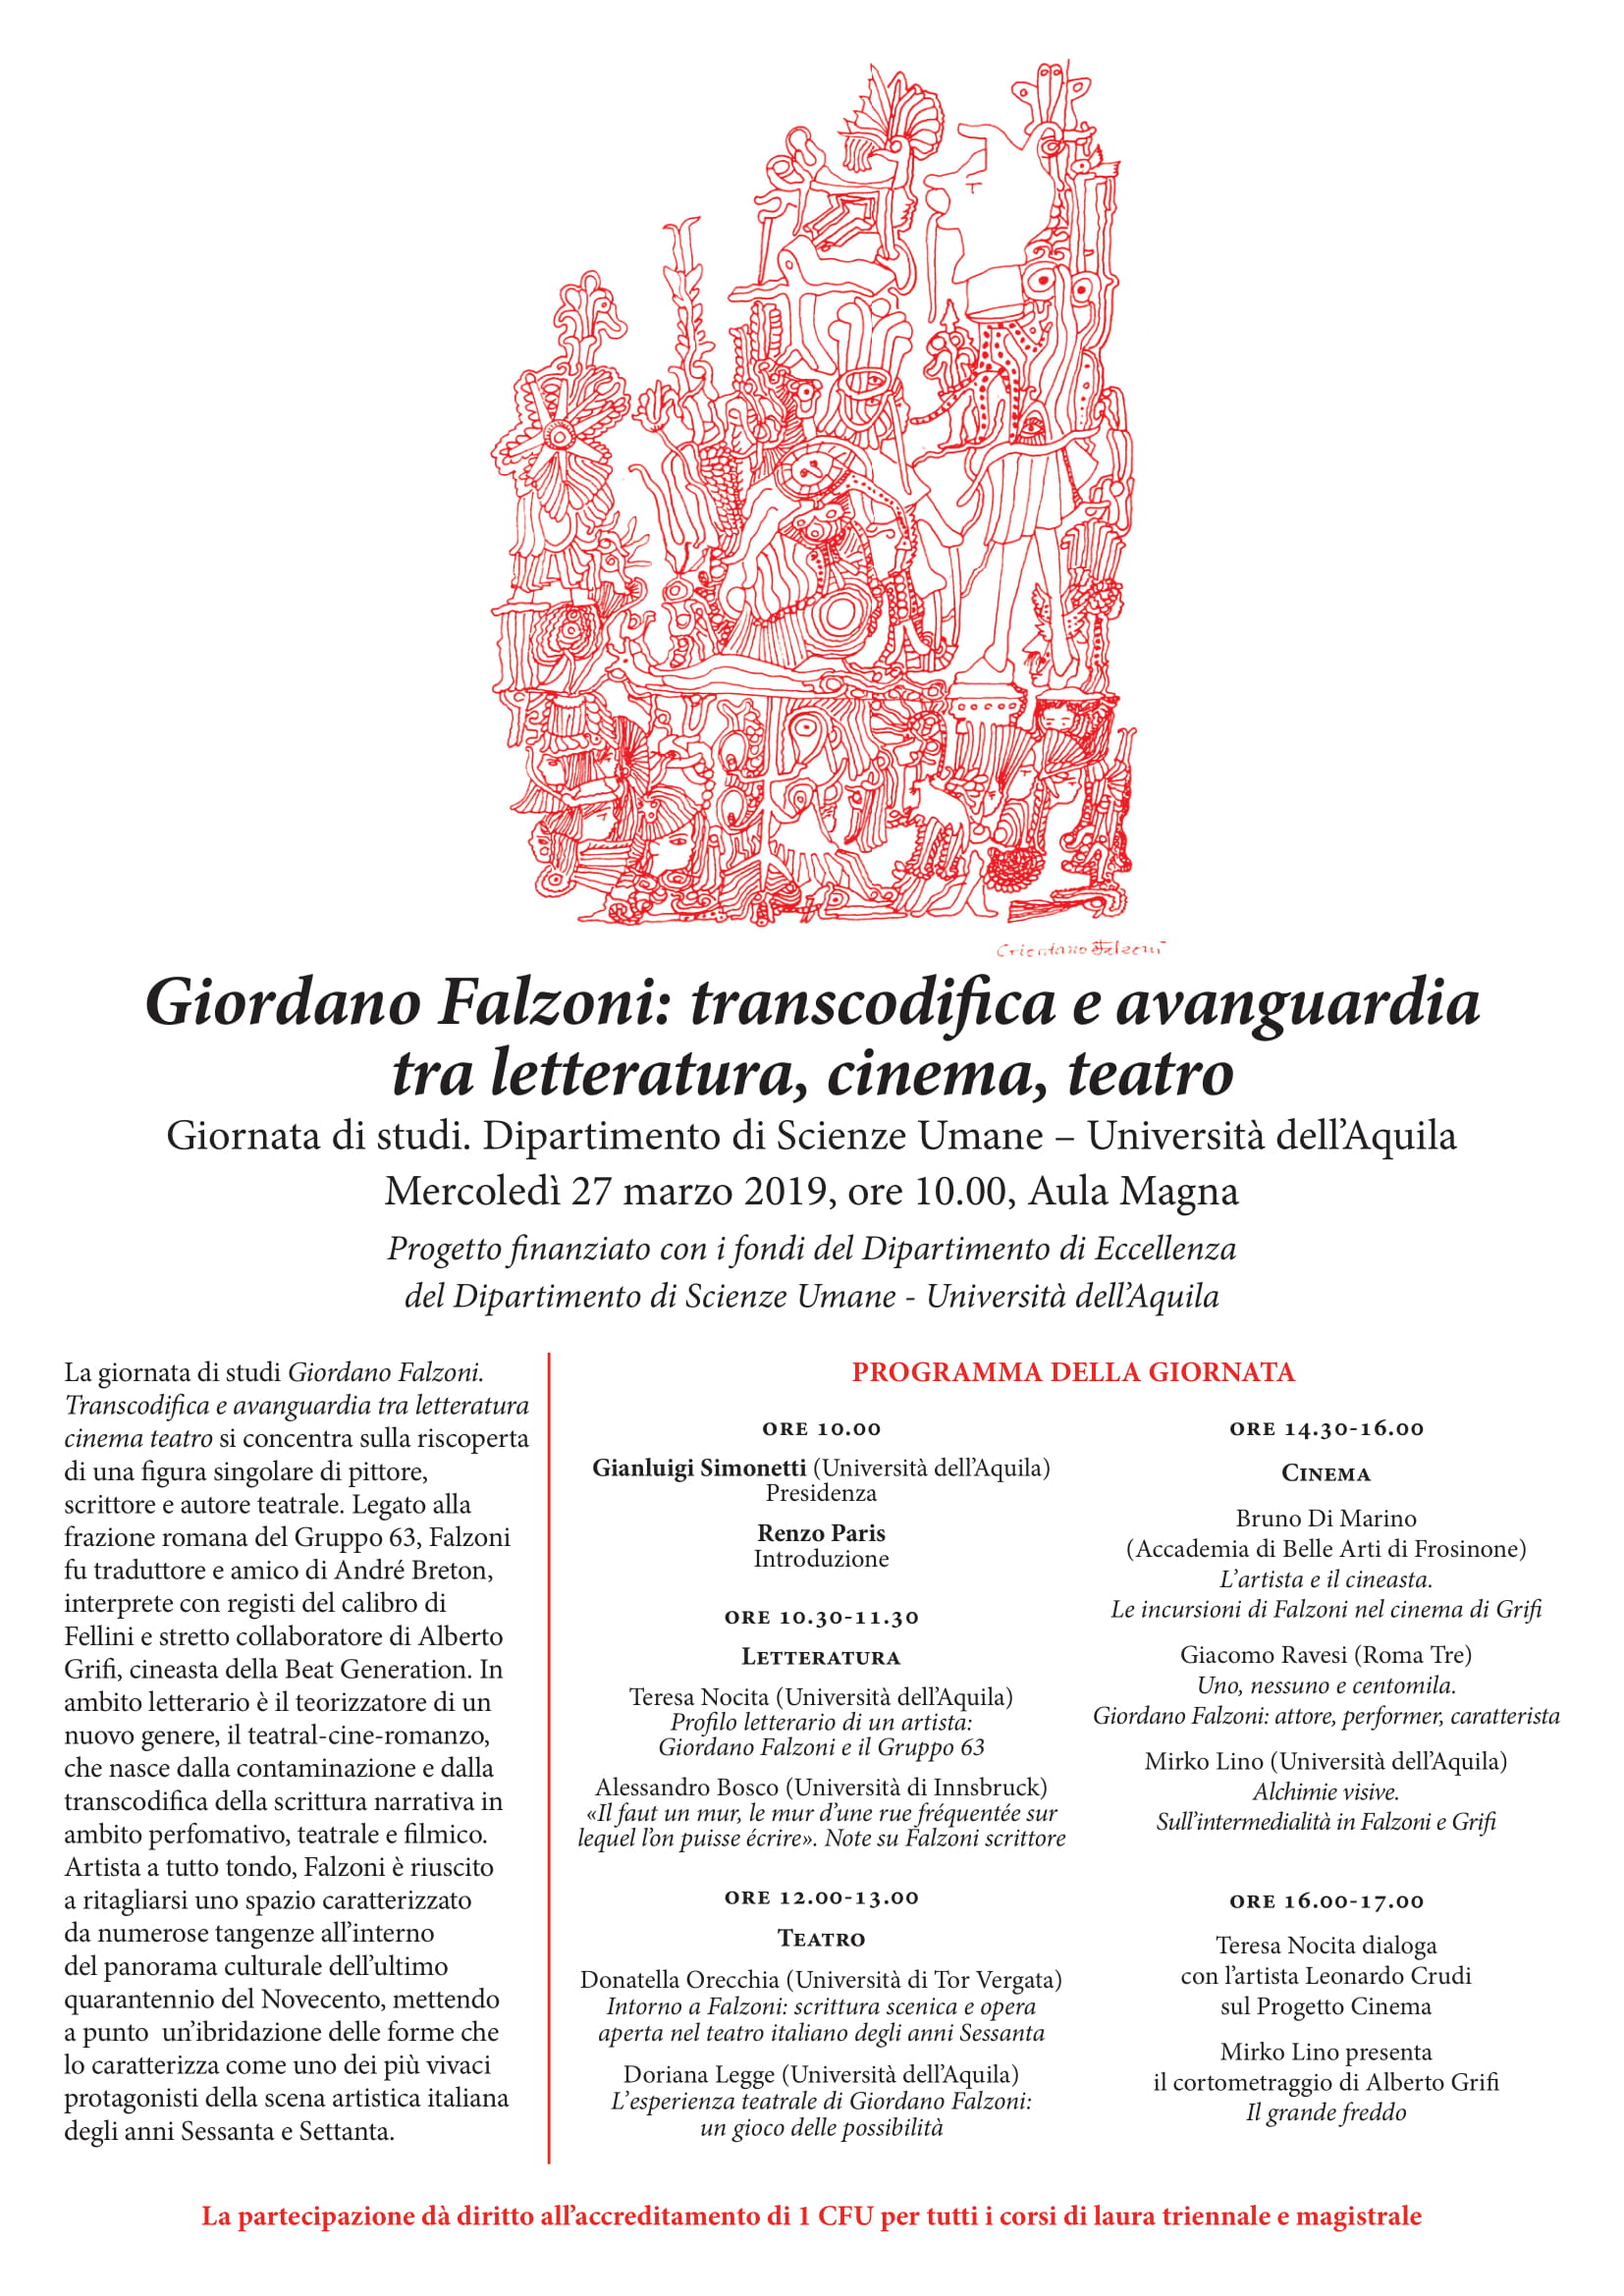 Convegno Giordano Falzoni: transcodifica e avanguardia tra letteratura, cinema, teatro.